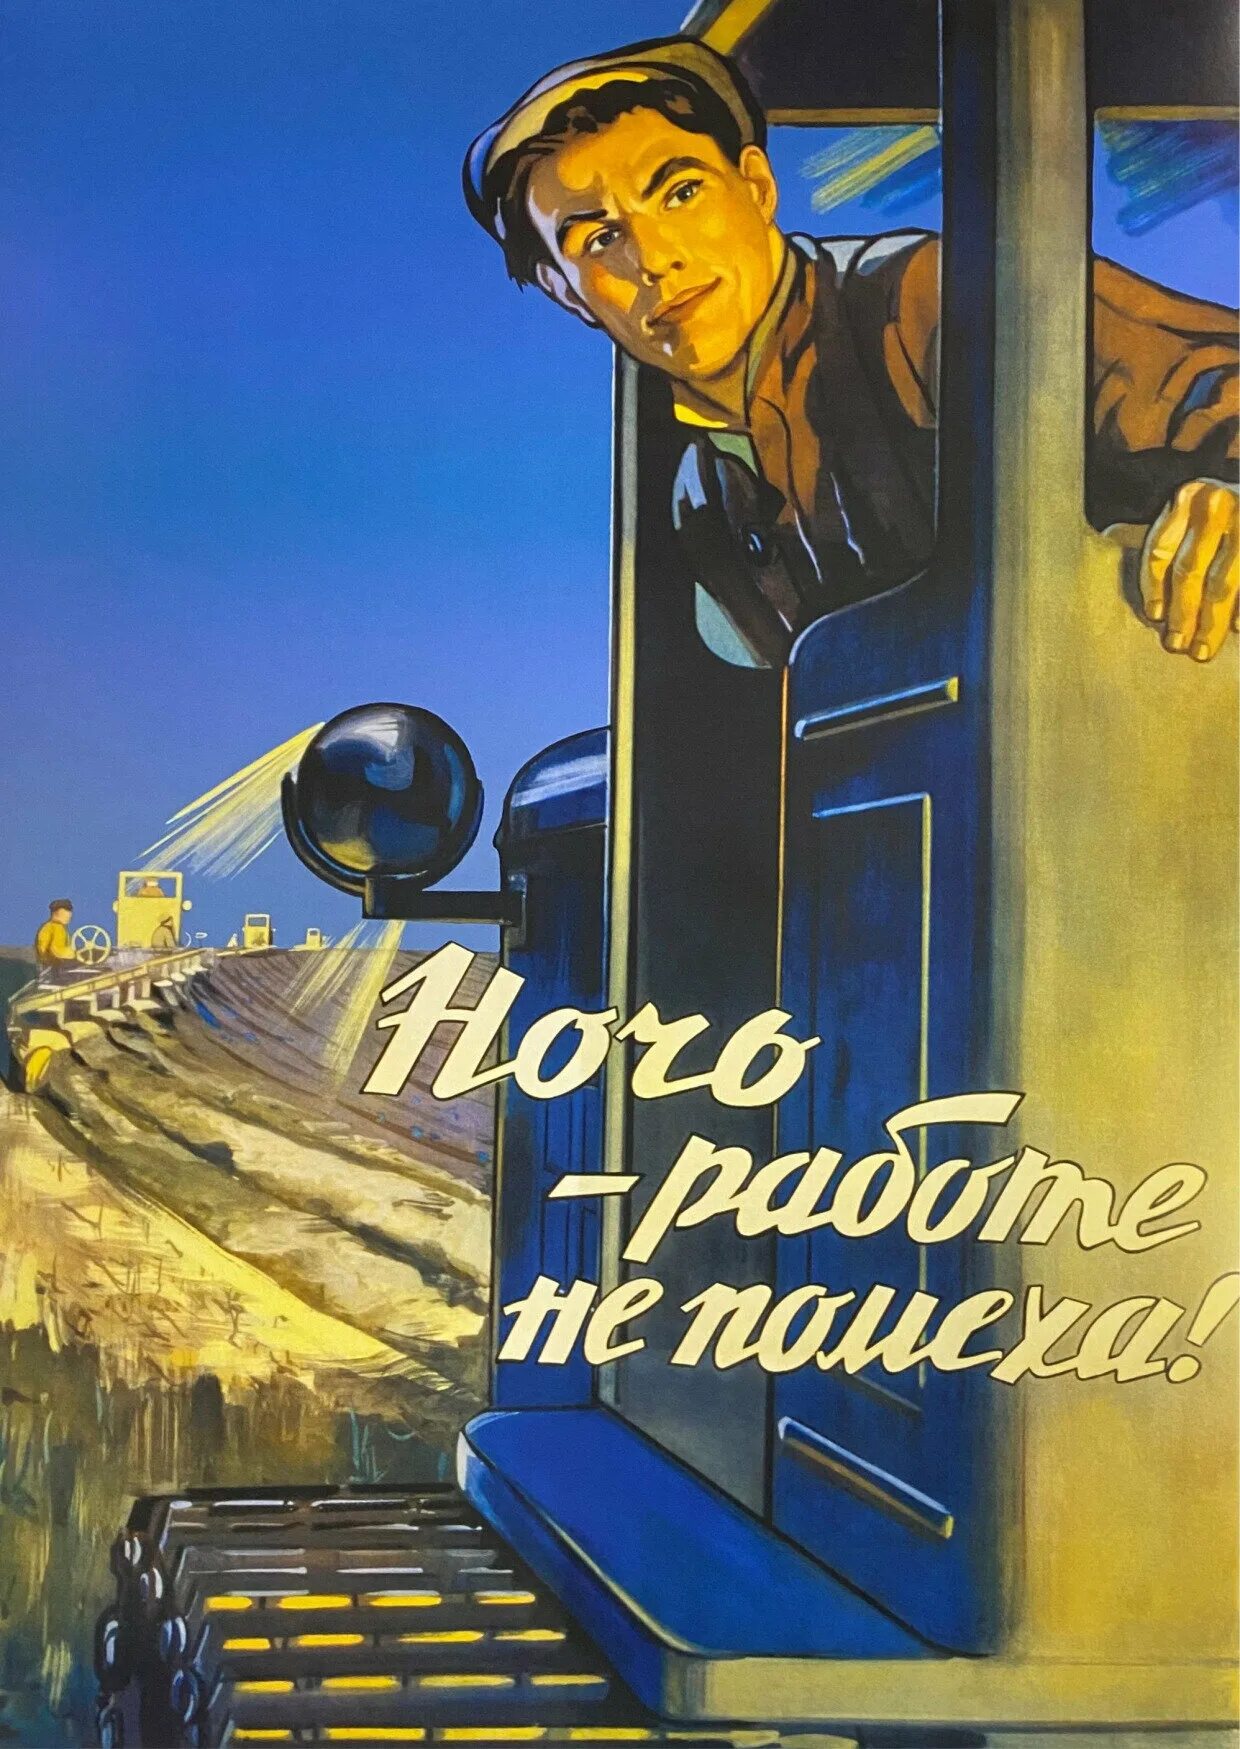 Работать без помех. Советские плакаты. Ночь работе не помеха. Плакат ночь работе не помеха. Советские плакаты про работу и труд.